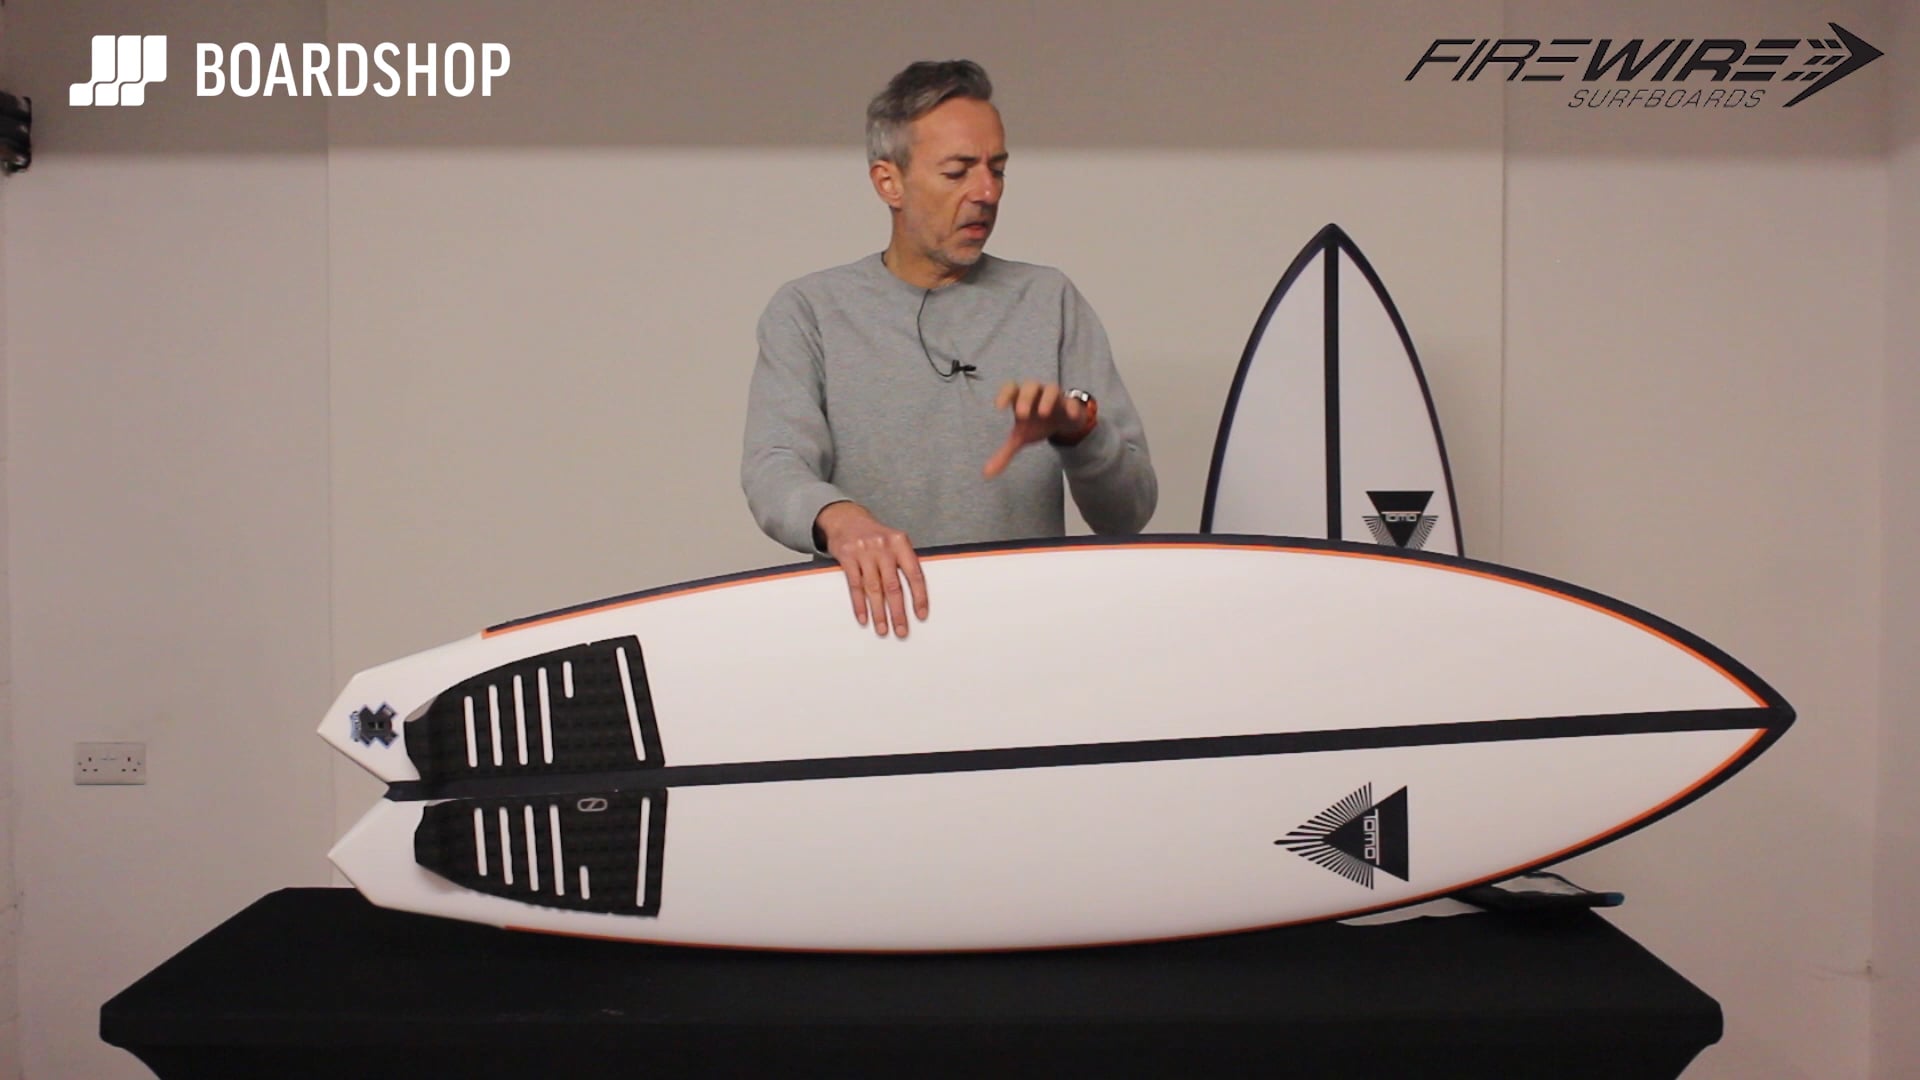 Firewire El Tomo Fish Surfboard Review